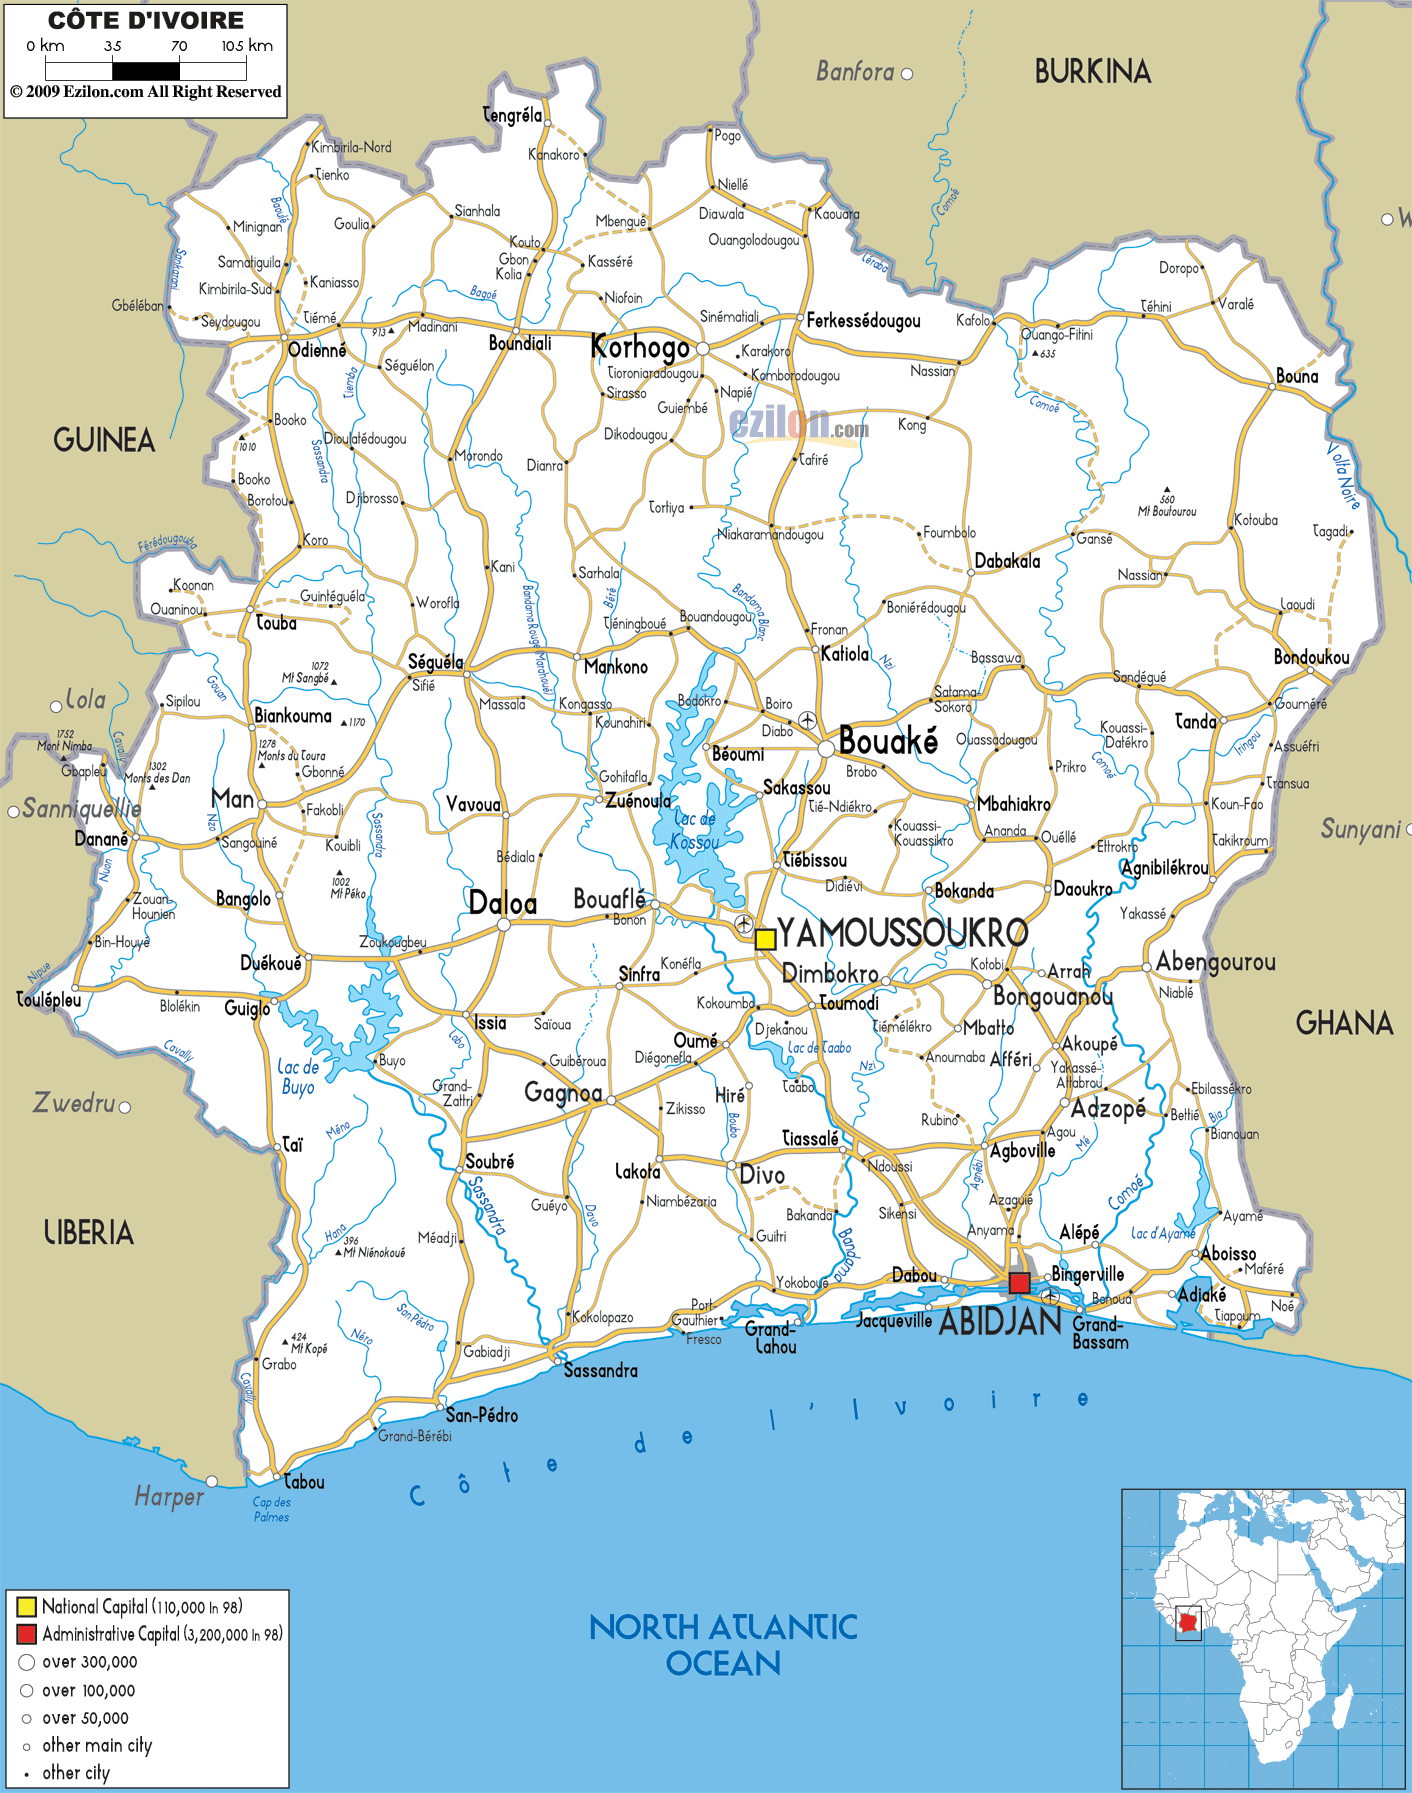 Cote d'Ivoire route carte